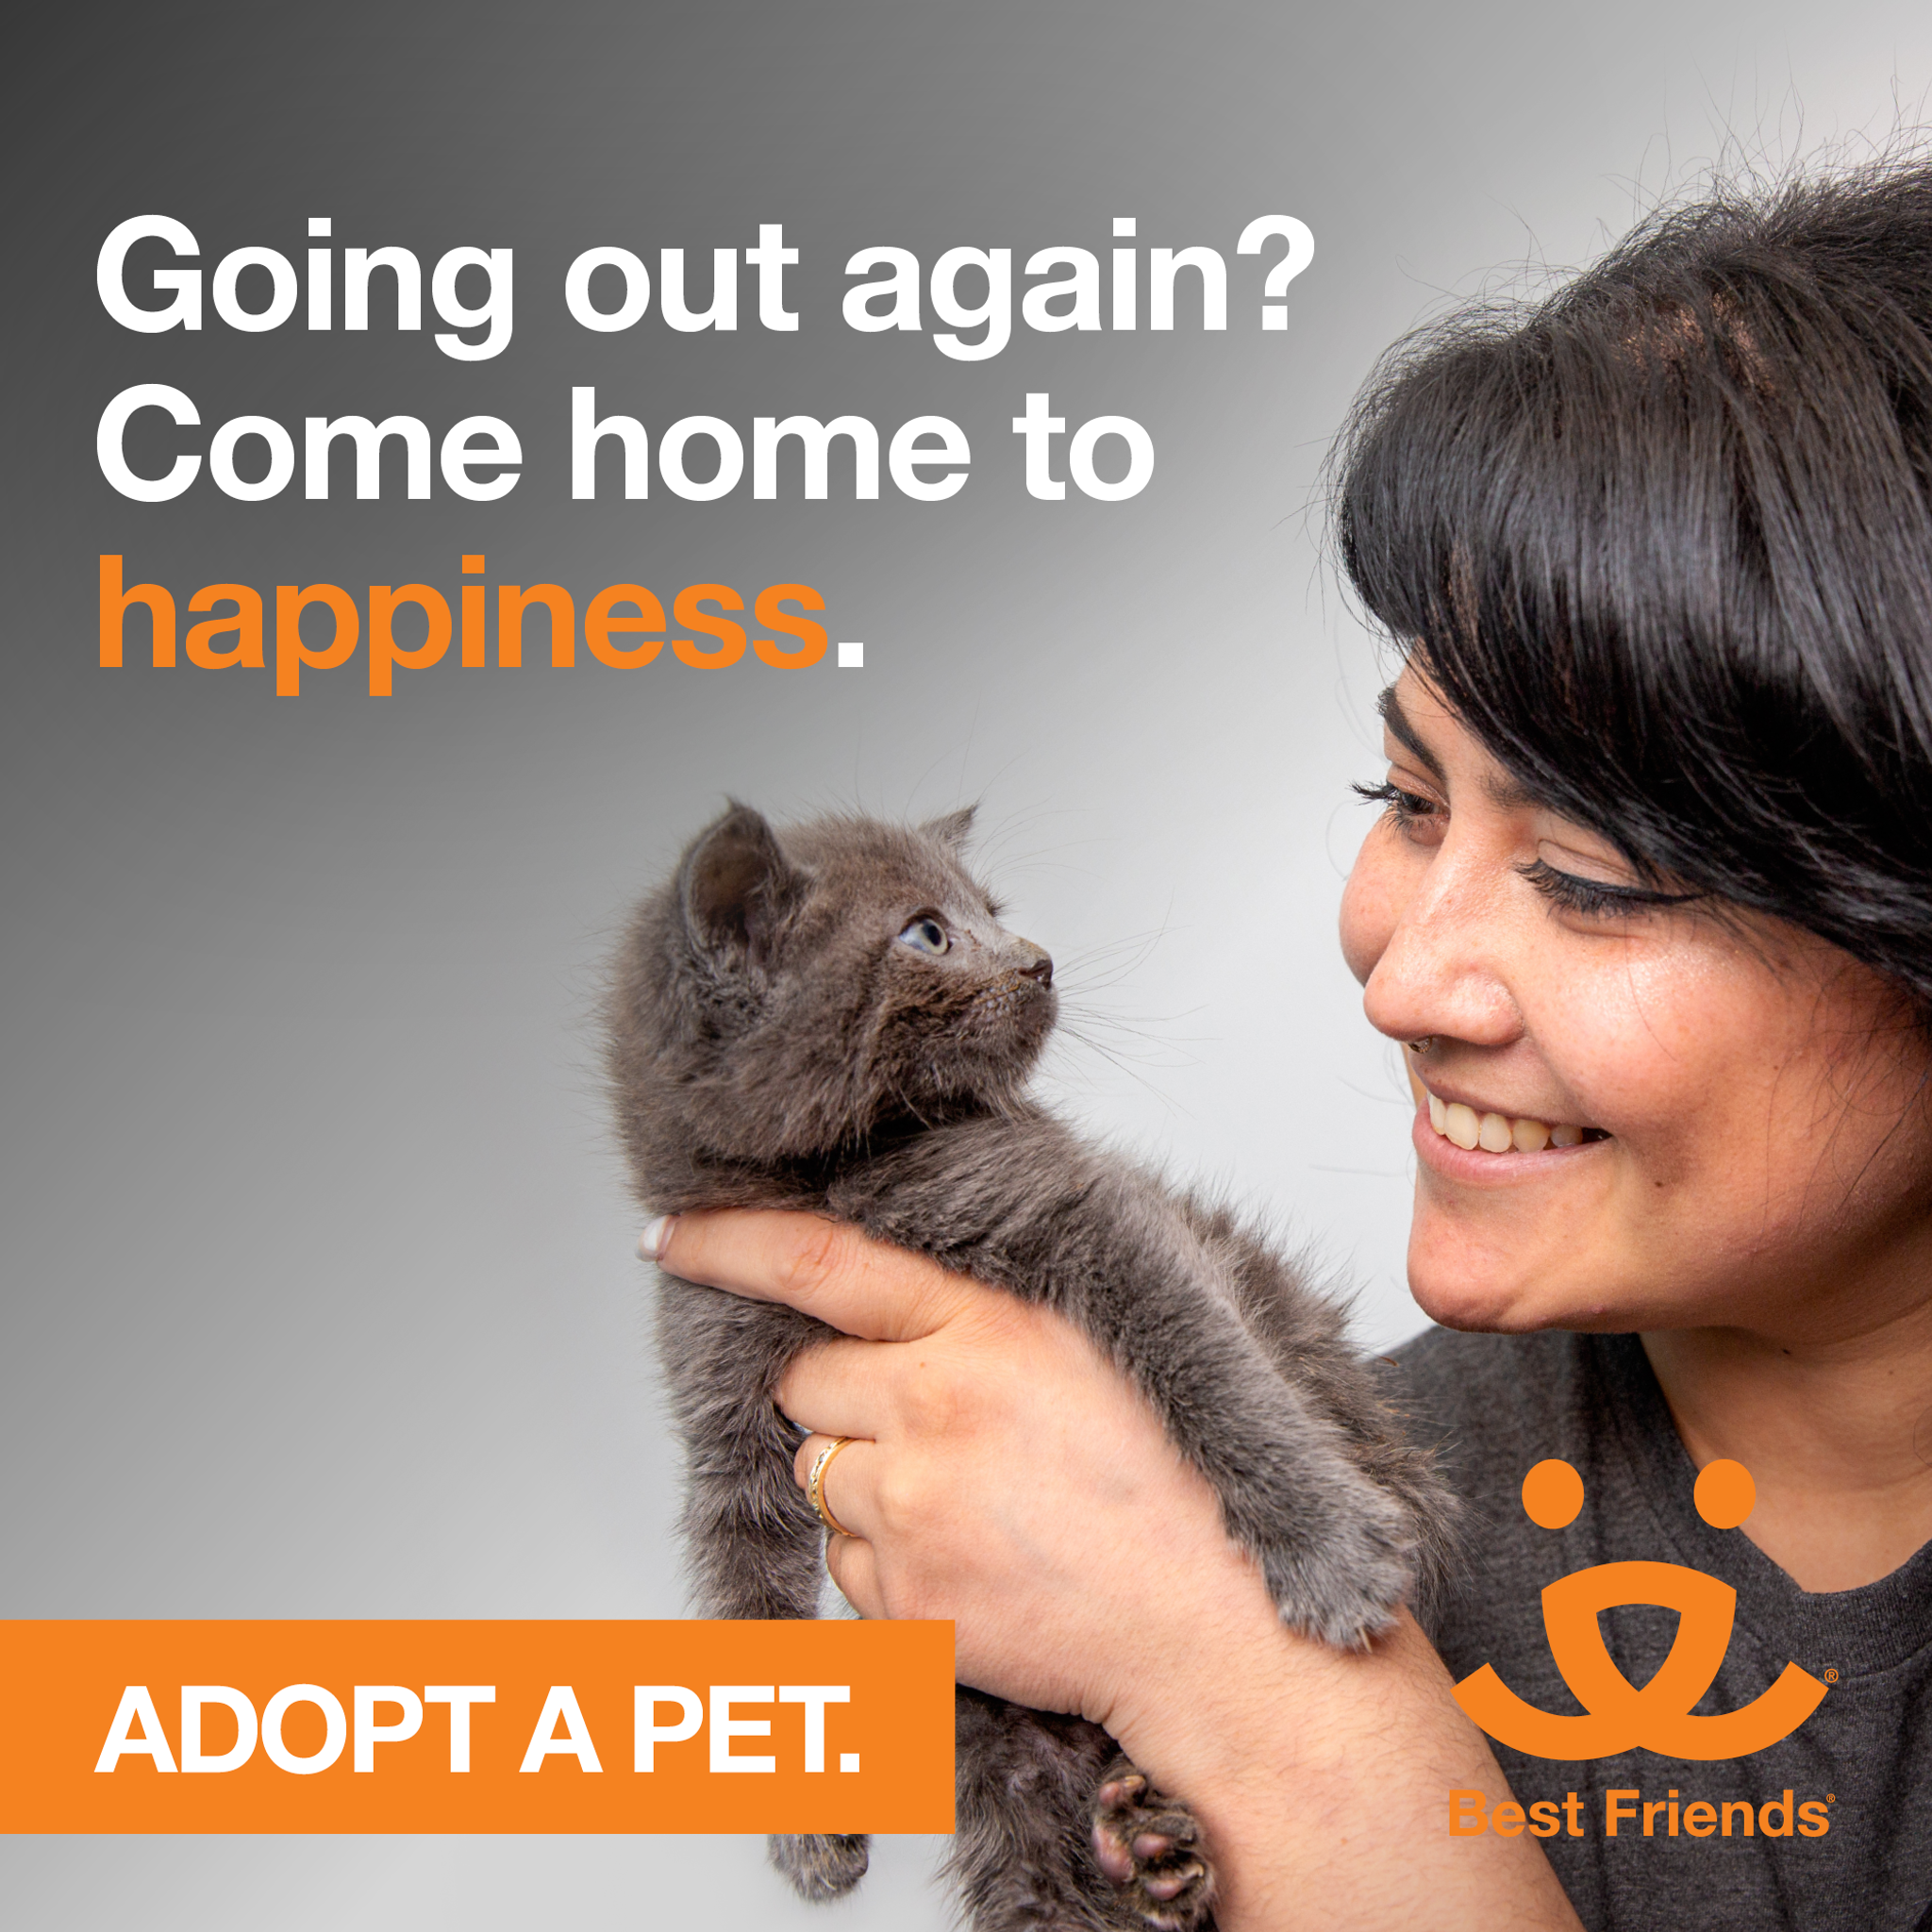 Adopt a pet